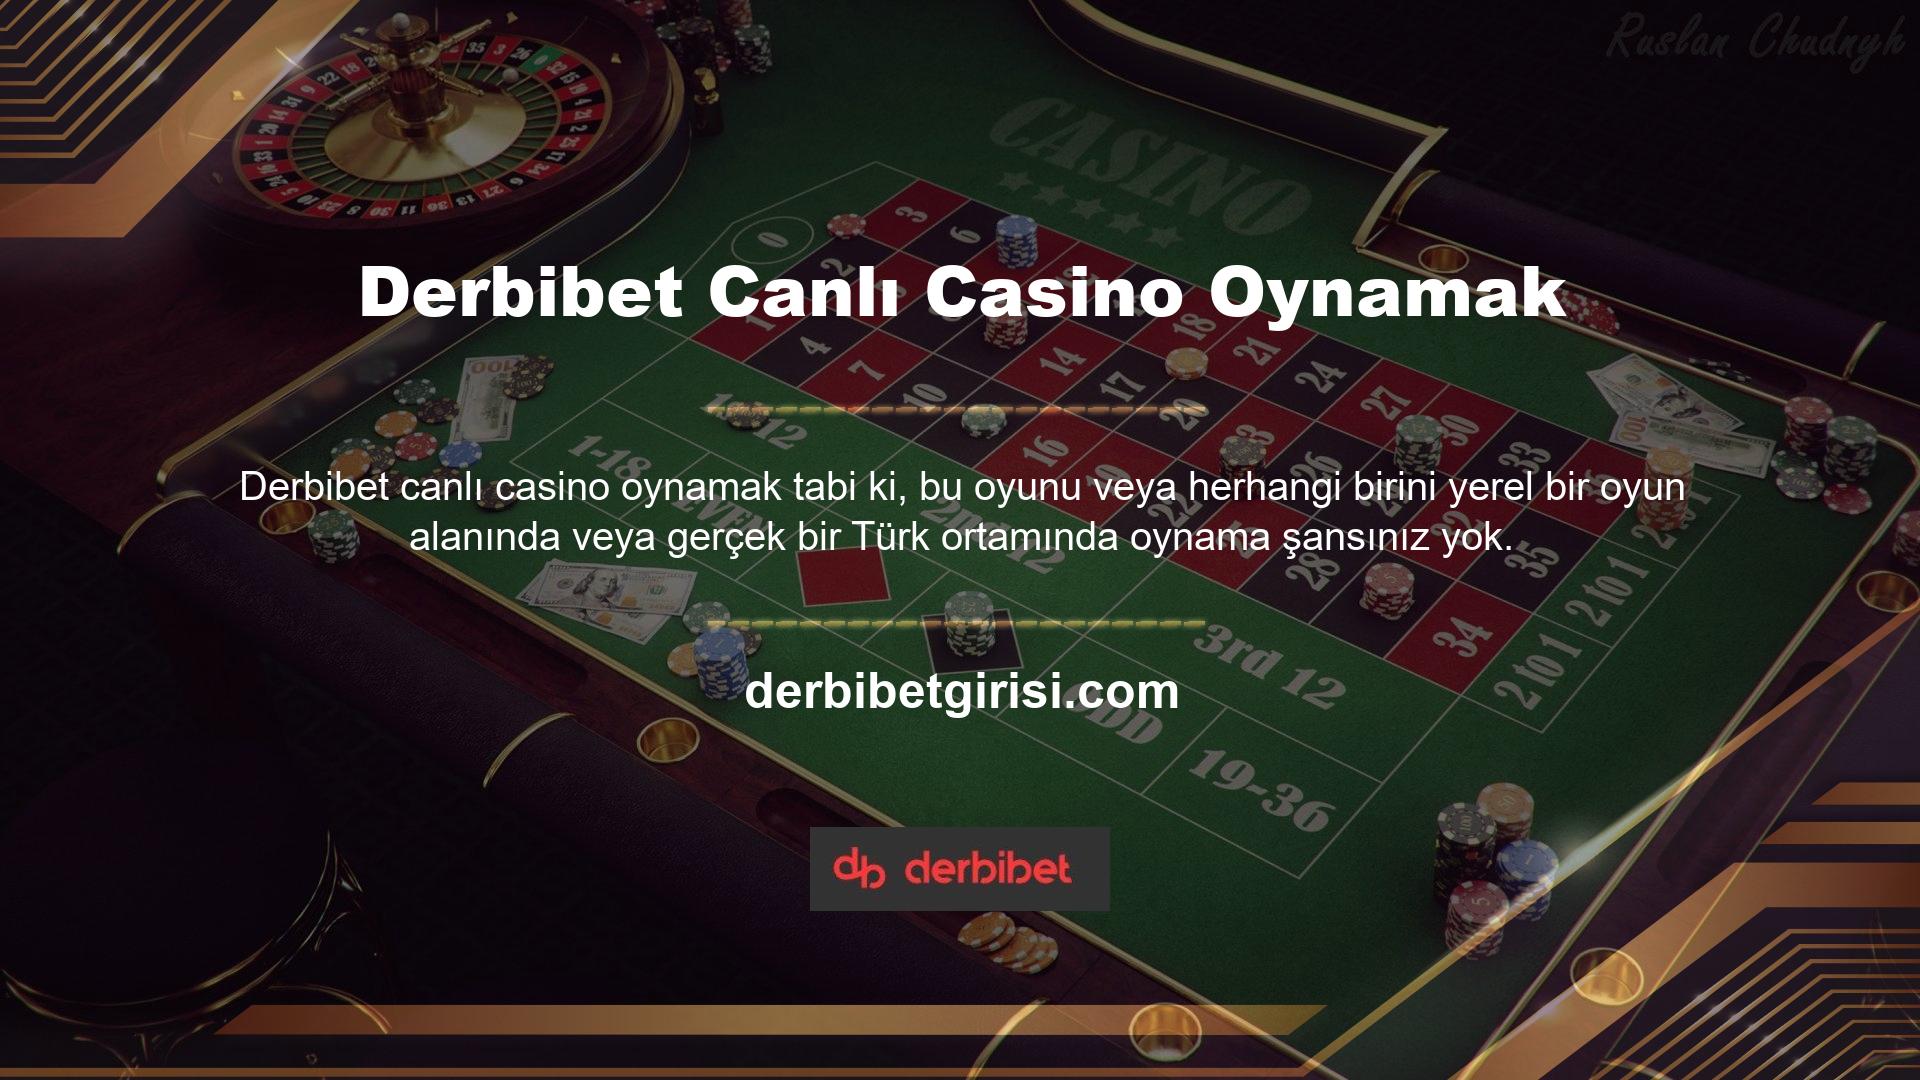 Peki nerede oynayabilirim? Türkiye’de online hizmet sunan yabancı casino sitelerini ve casino sitelerini kullanıyorum